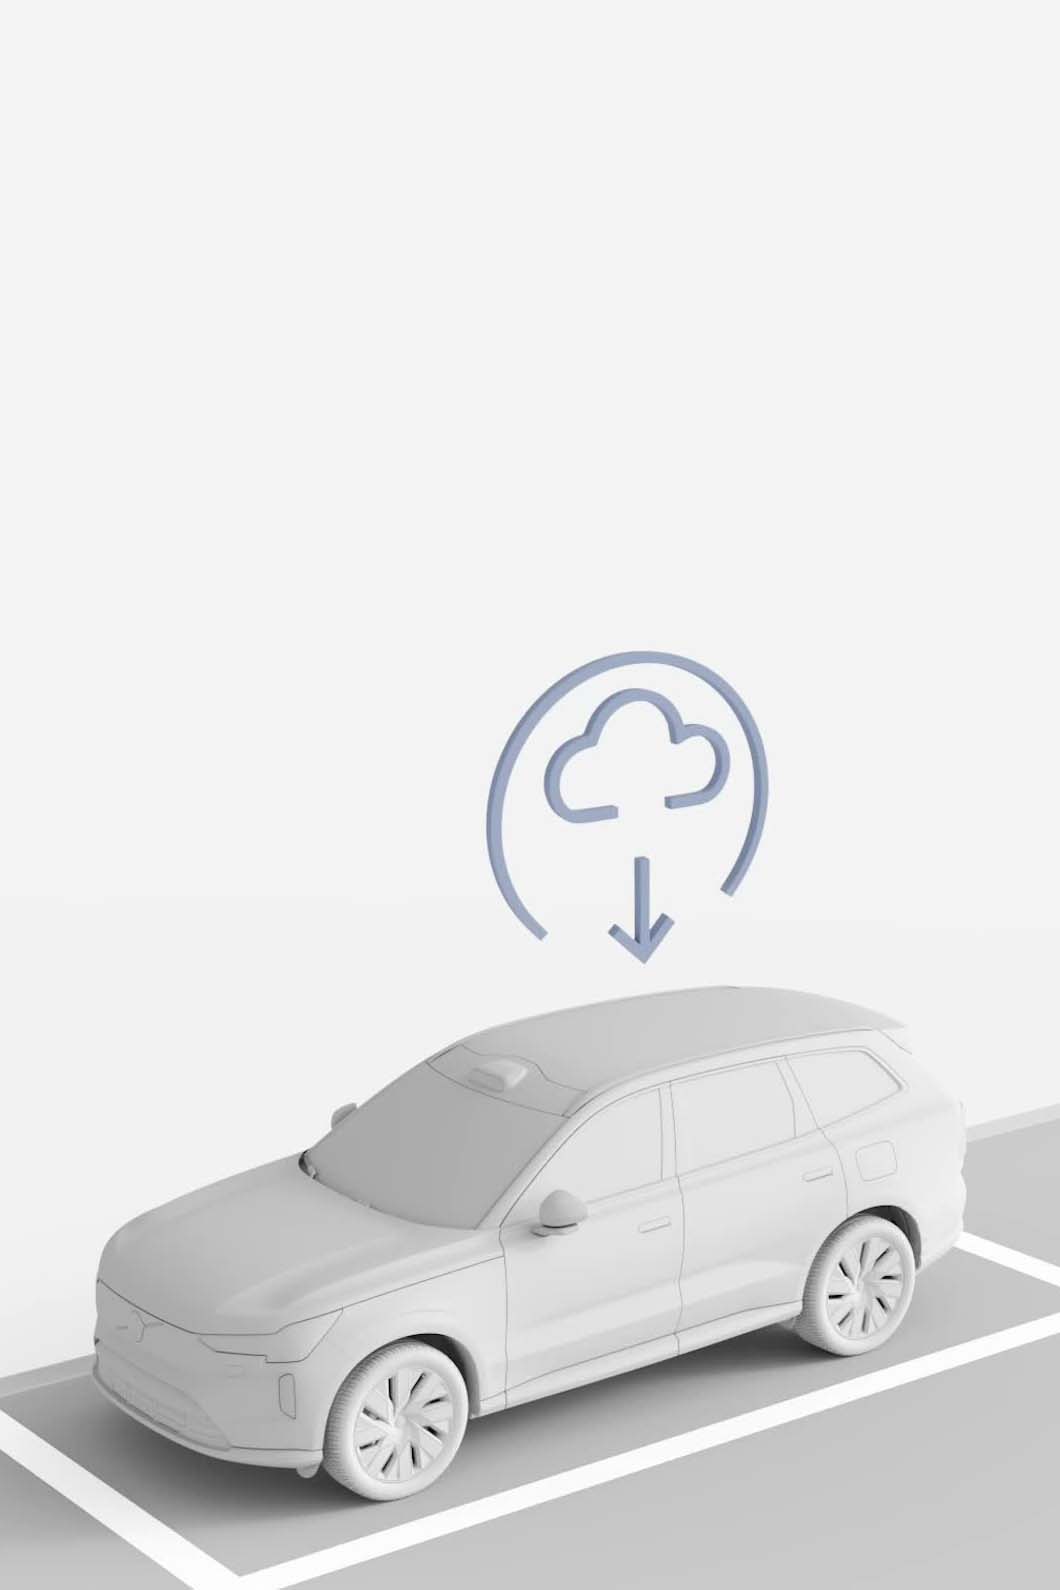 Illustrazione di un'auto Volvo che riceve un aggiornamento software dal cloud.